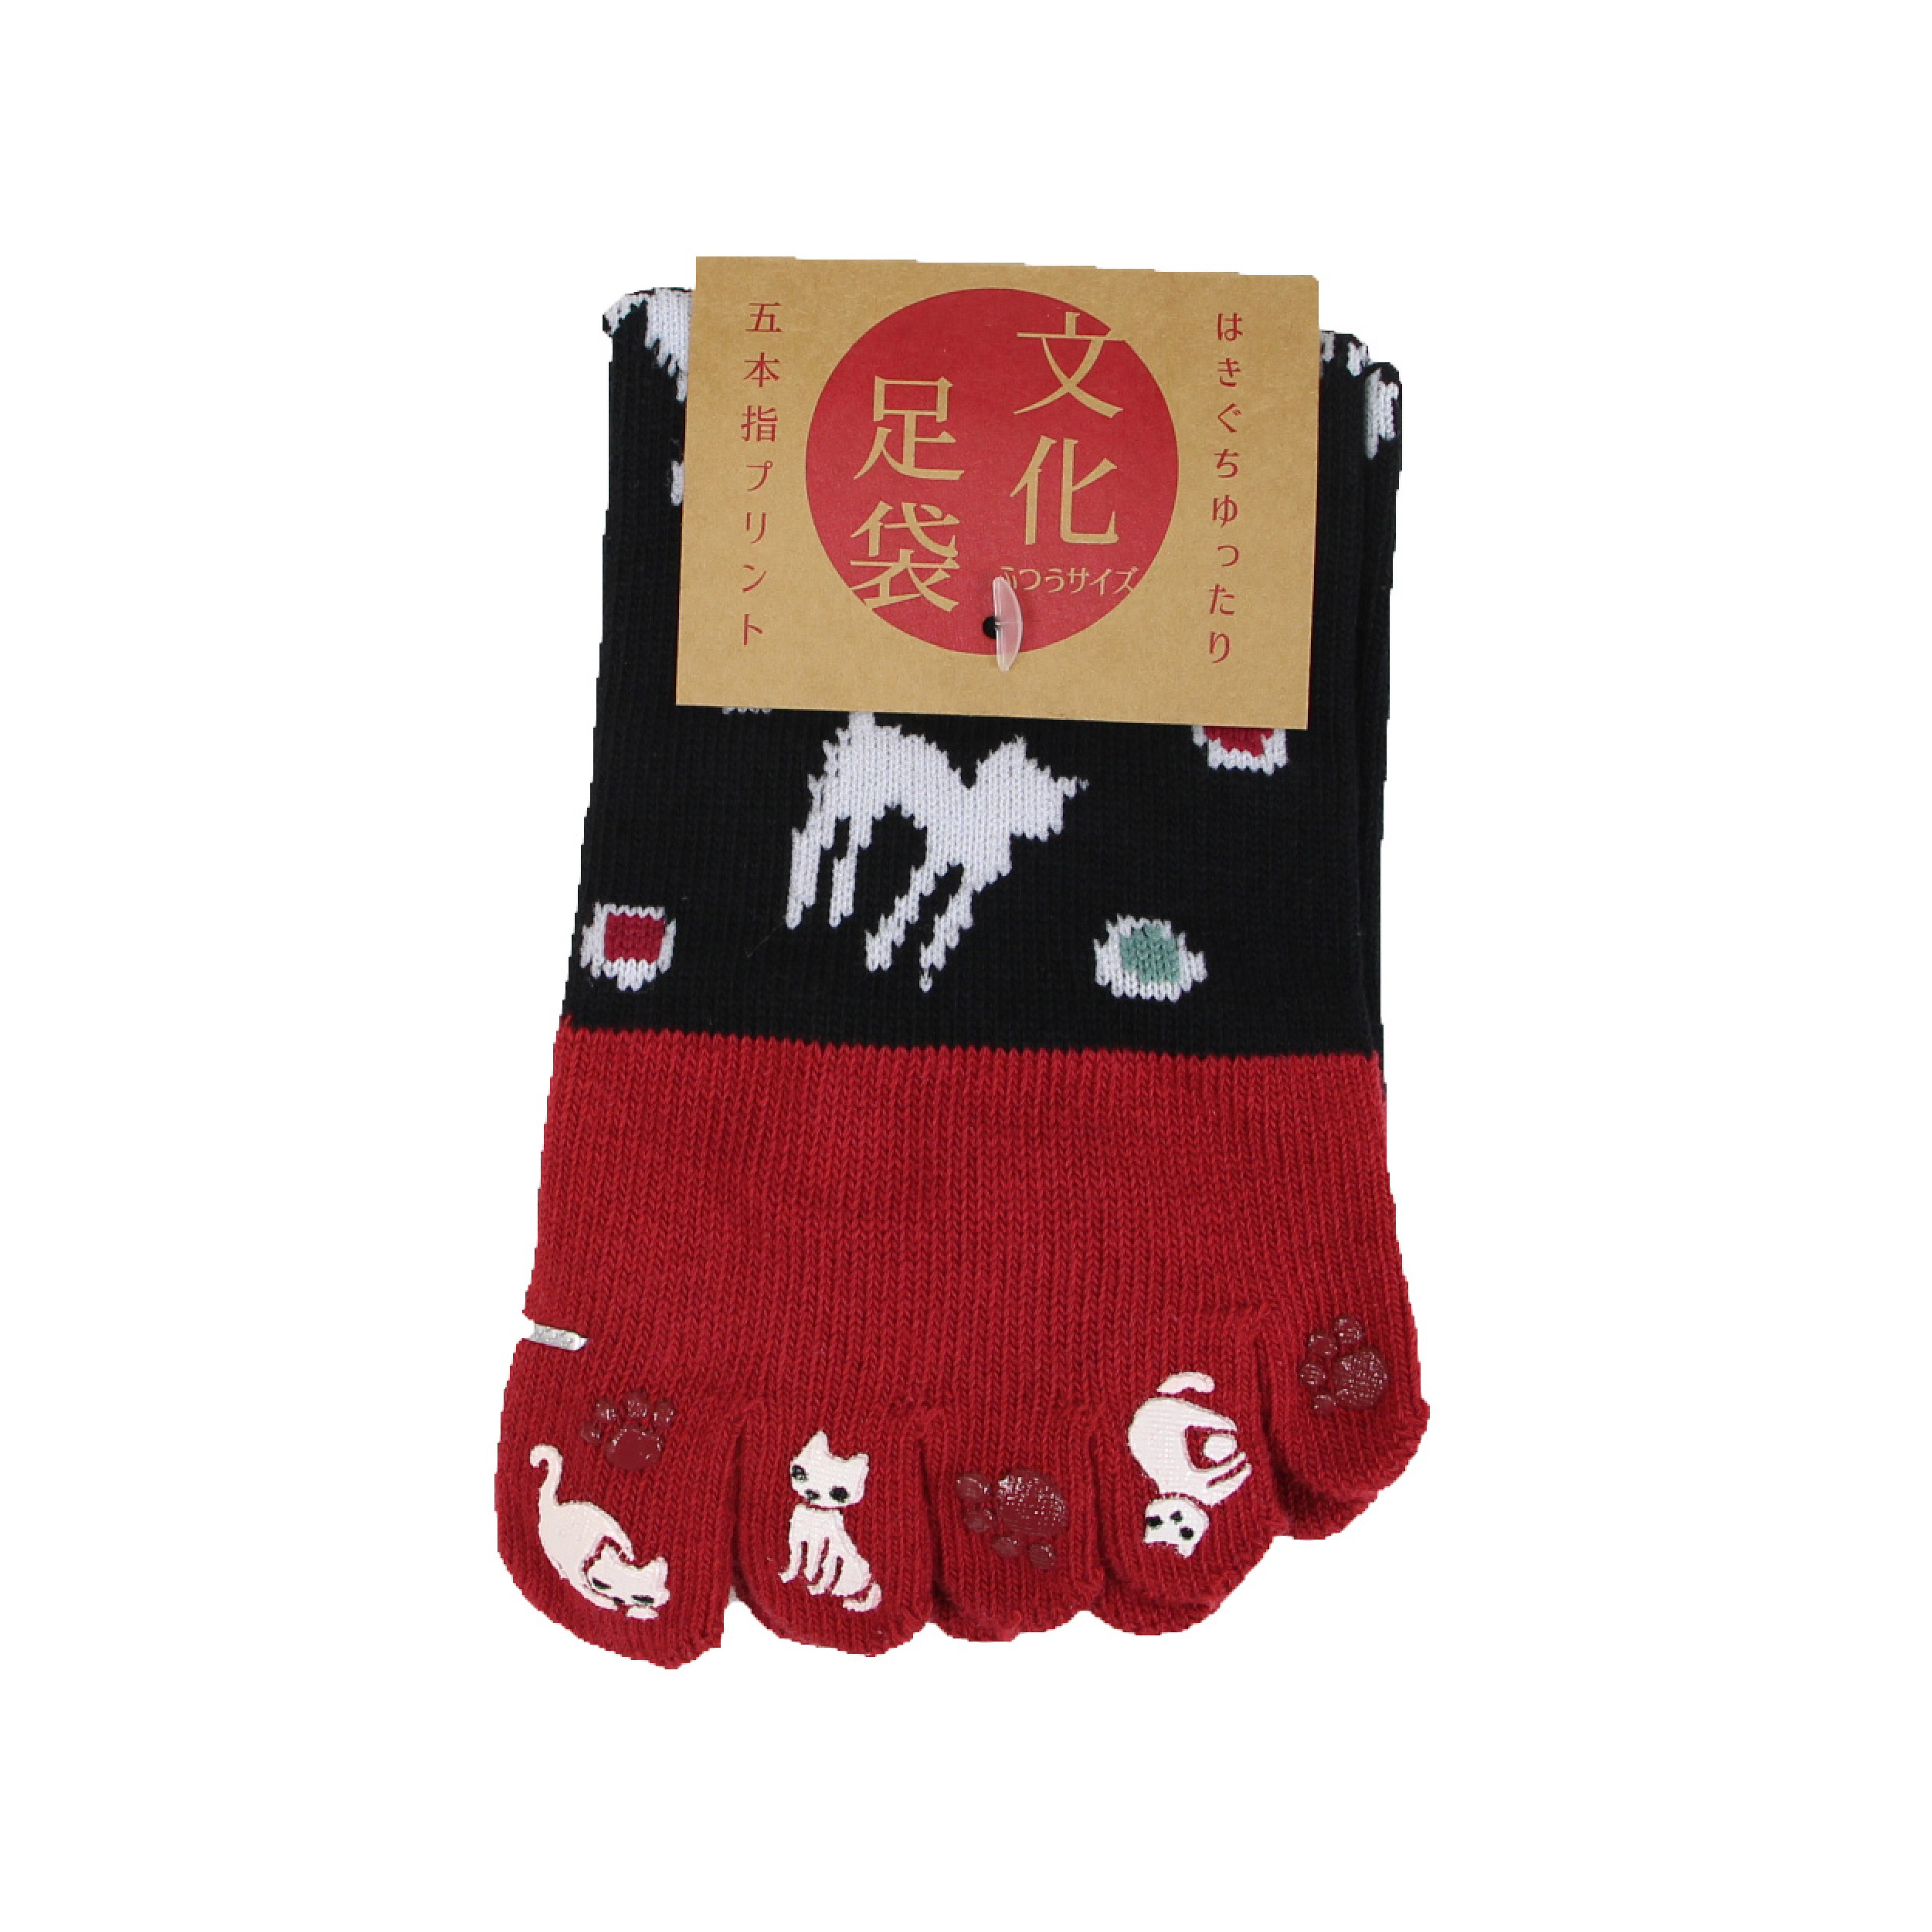 靴下 レディース 女性用 全10種 ソックス 5本指 和柄 暖かい 京都和雑貨 おしゃれ かわいい